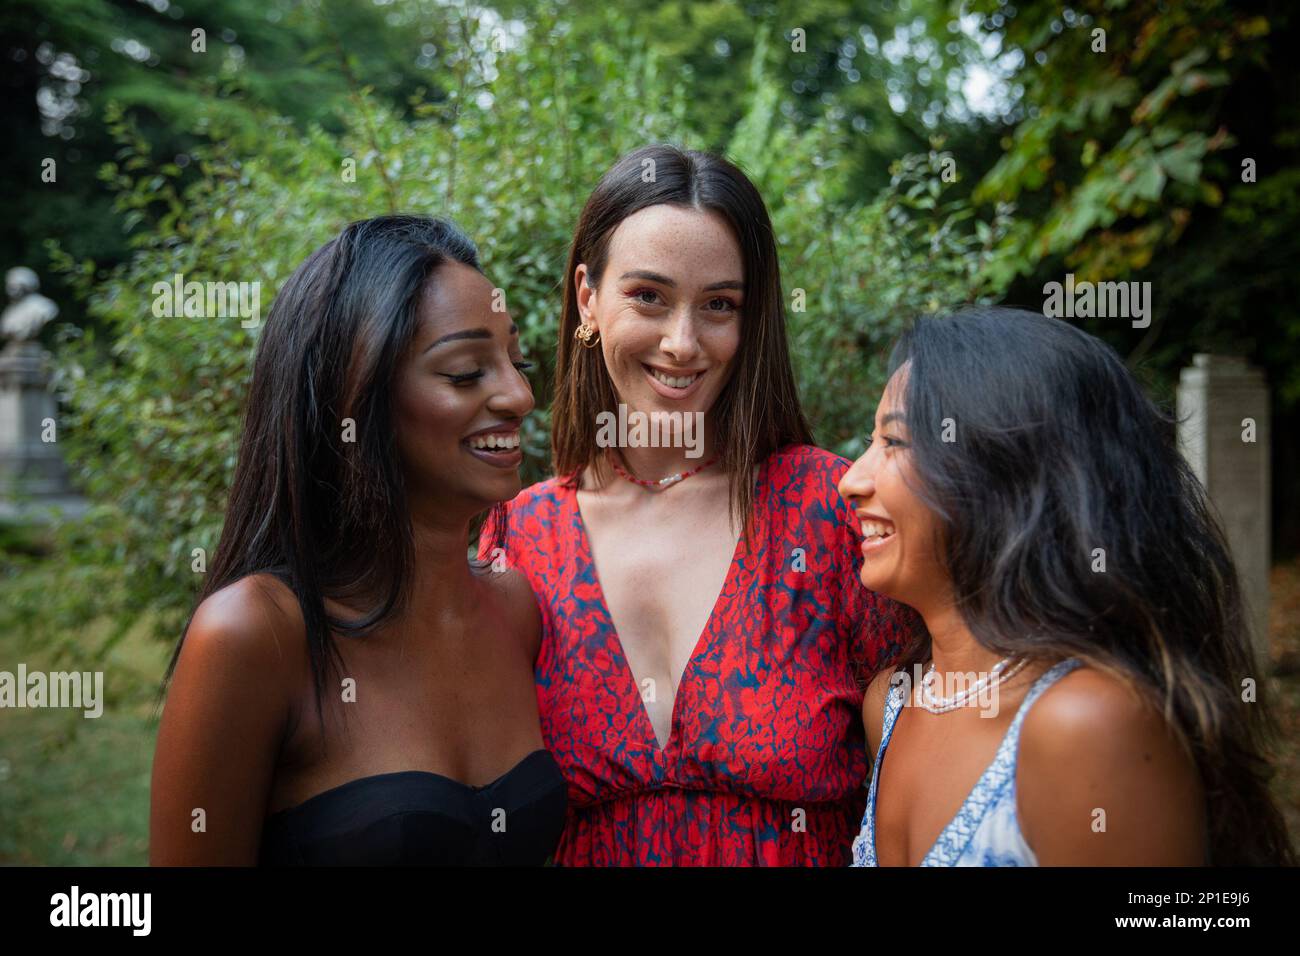 Drei Freundinnen unterschiedlicher ethnischer Herkunft lachen in einem öffentlichen Park zusammen. Stockfoto